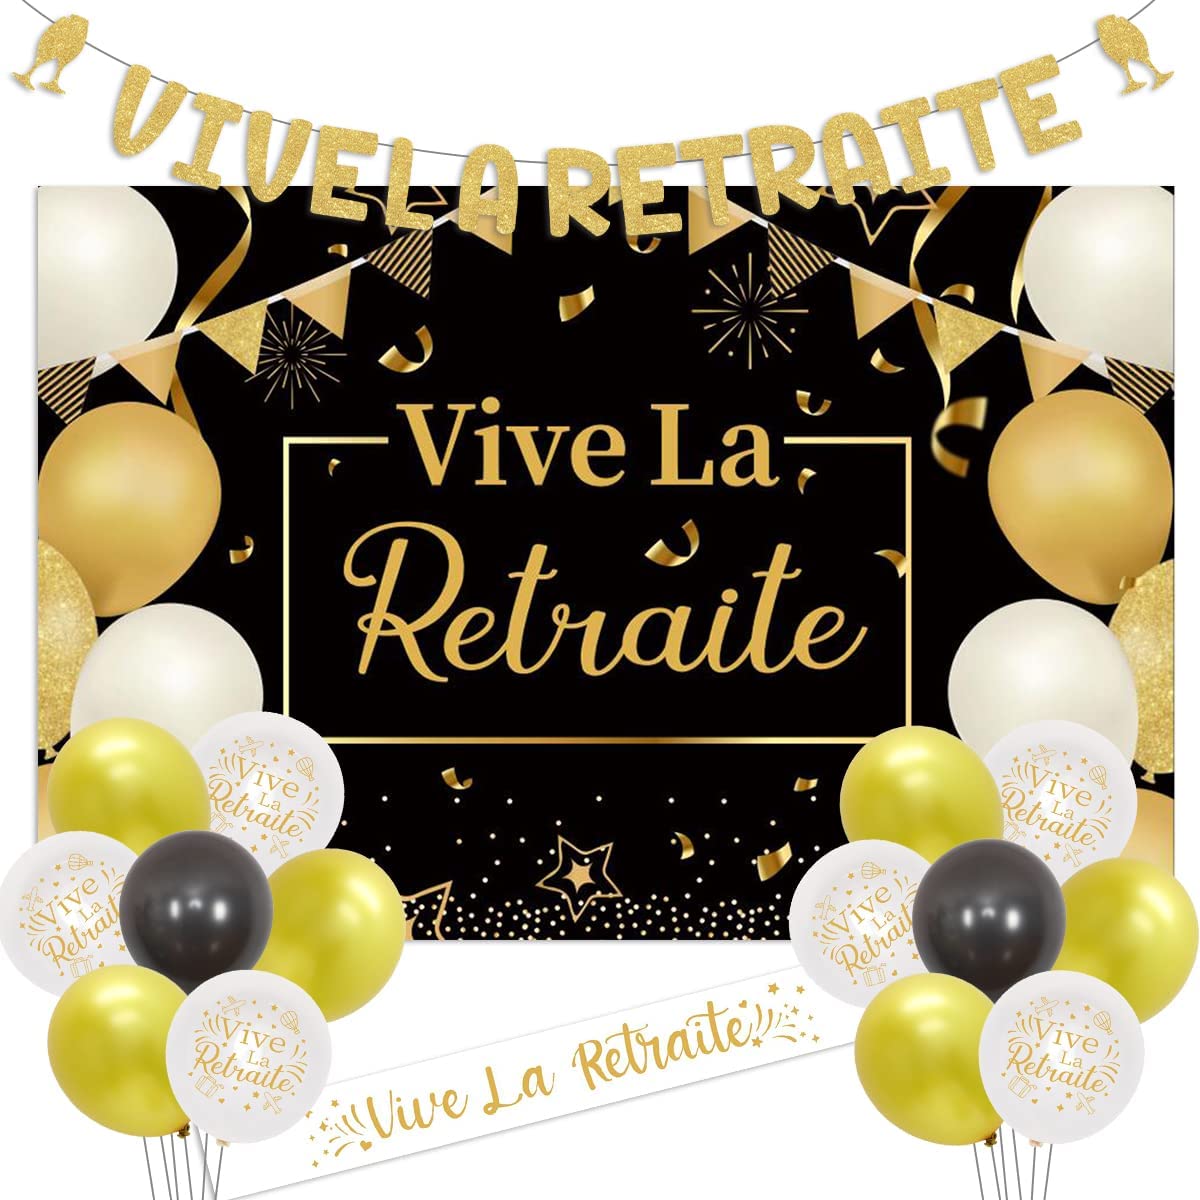 Retirement Party Decorations Vive La Retraite Banner and Satin Sash Black Gold Backdrop for Men Women Happy Retirement Supplies